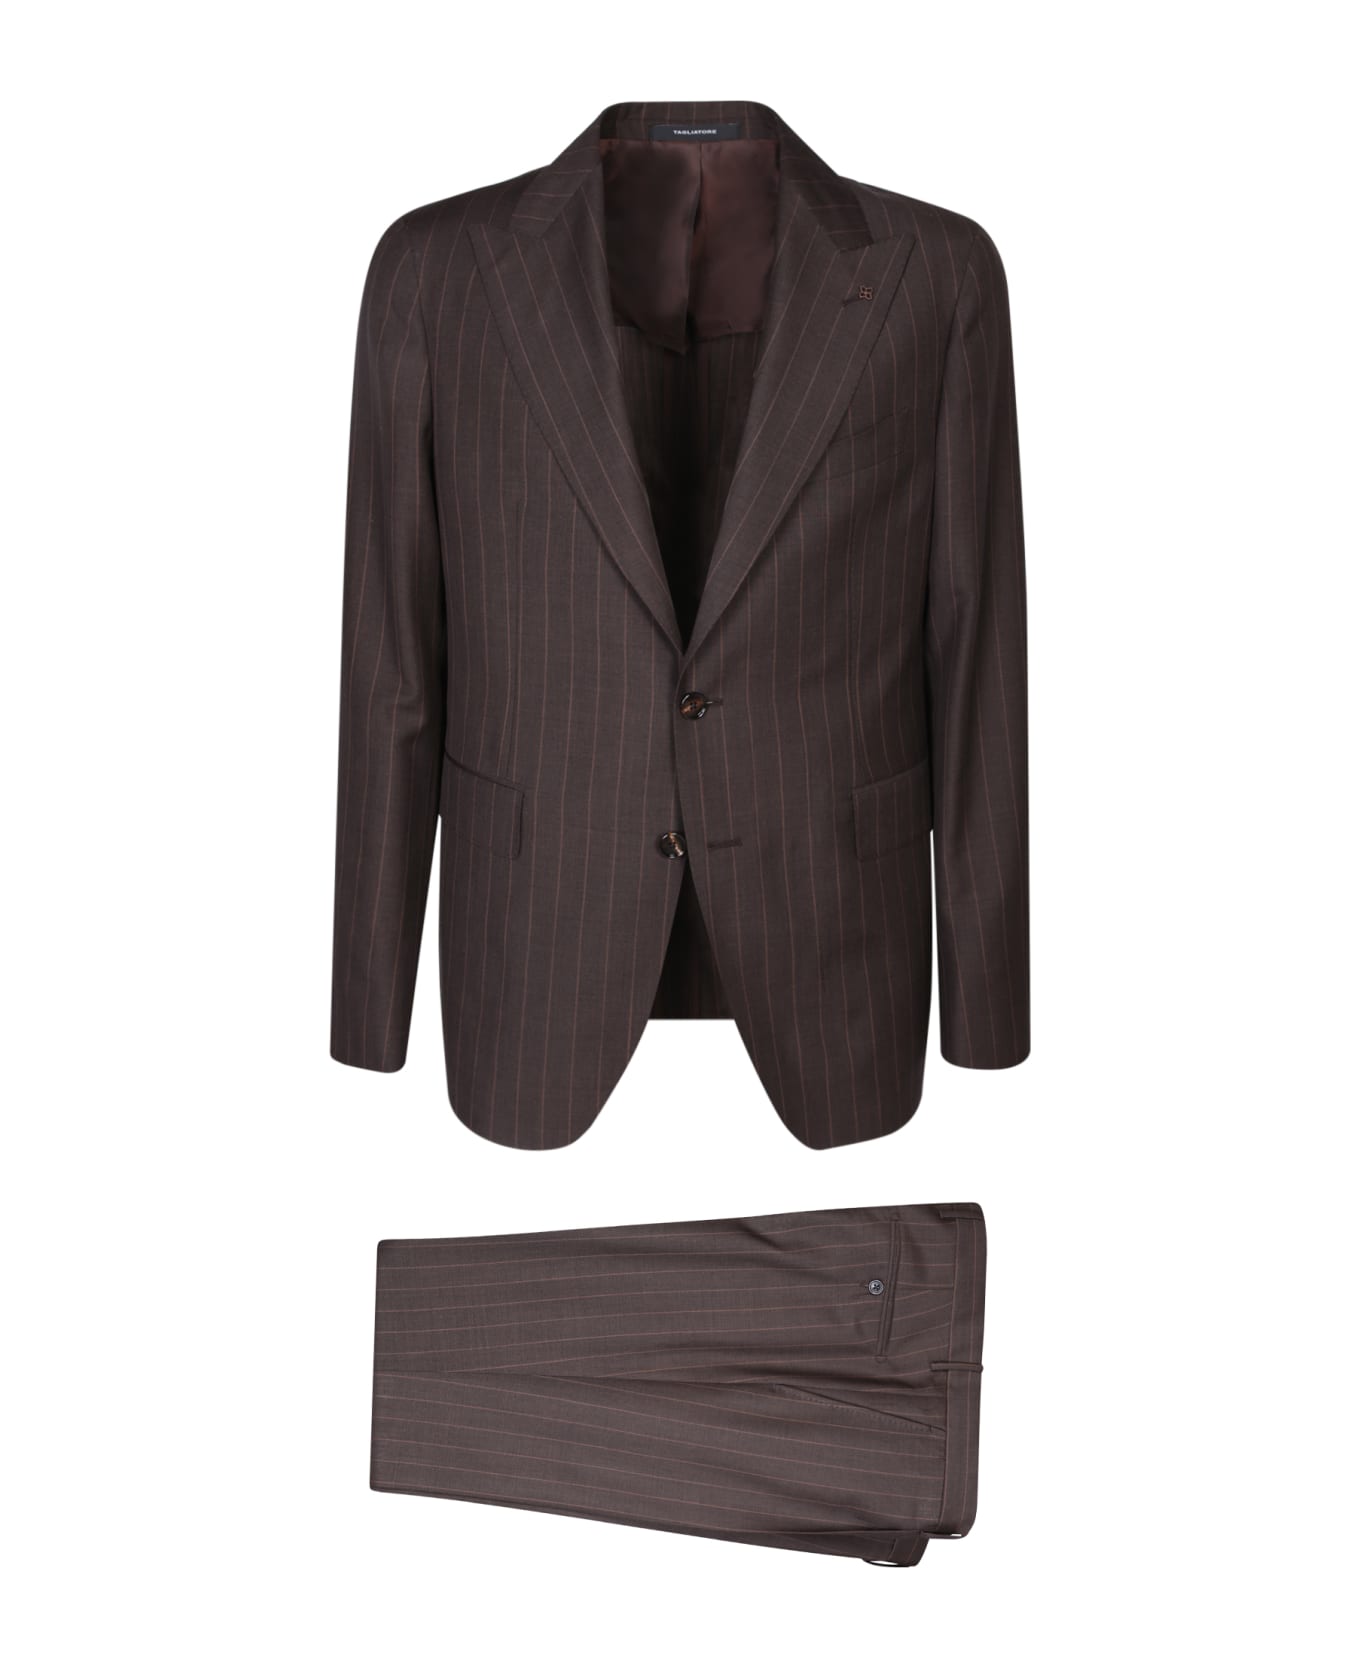 Tagliatore Vesuvio Brown/beige Suit - Beige